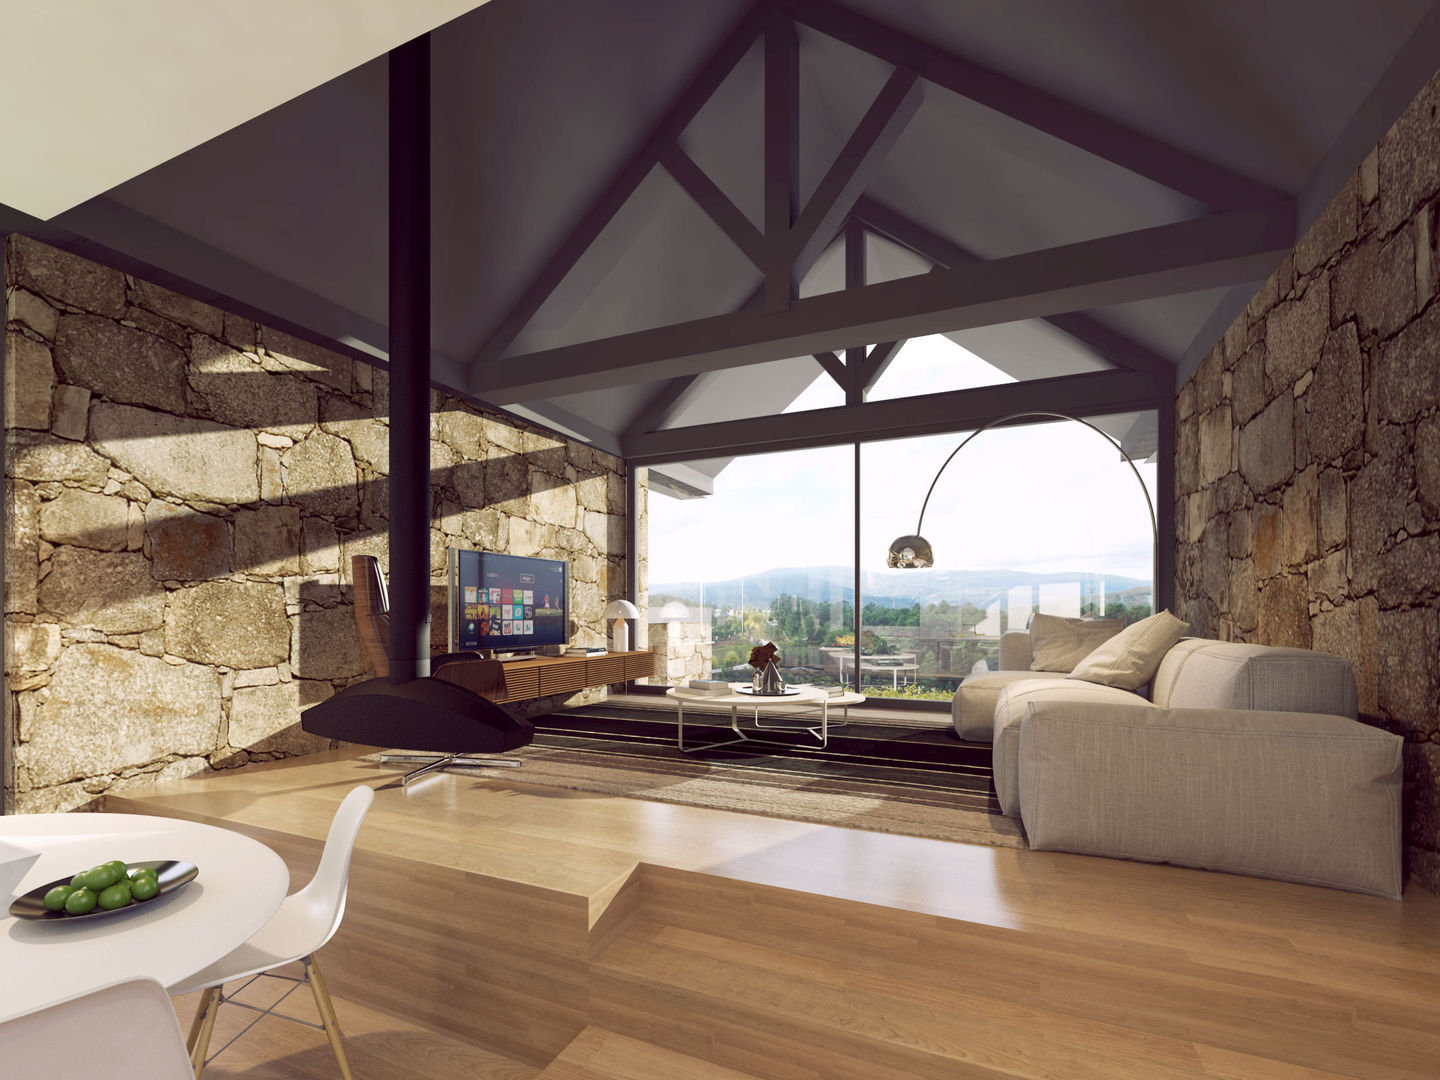 Recuperação de uma habitação rural em Melgaço, Davide Domingues Arquitecto Davide Domingues Arquitecto Rustic style living room